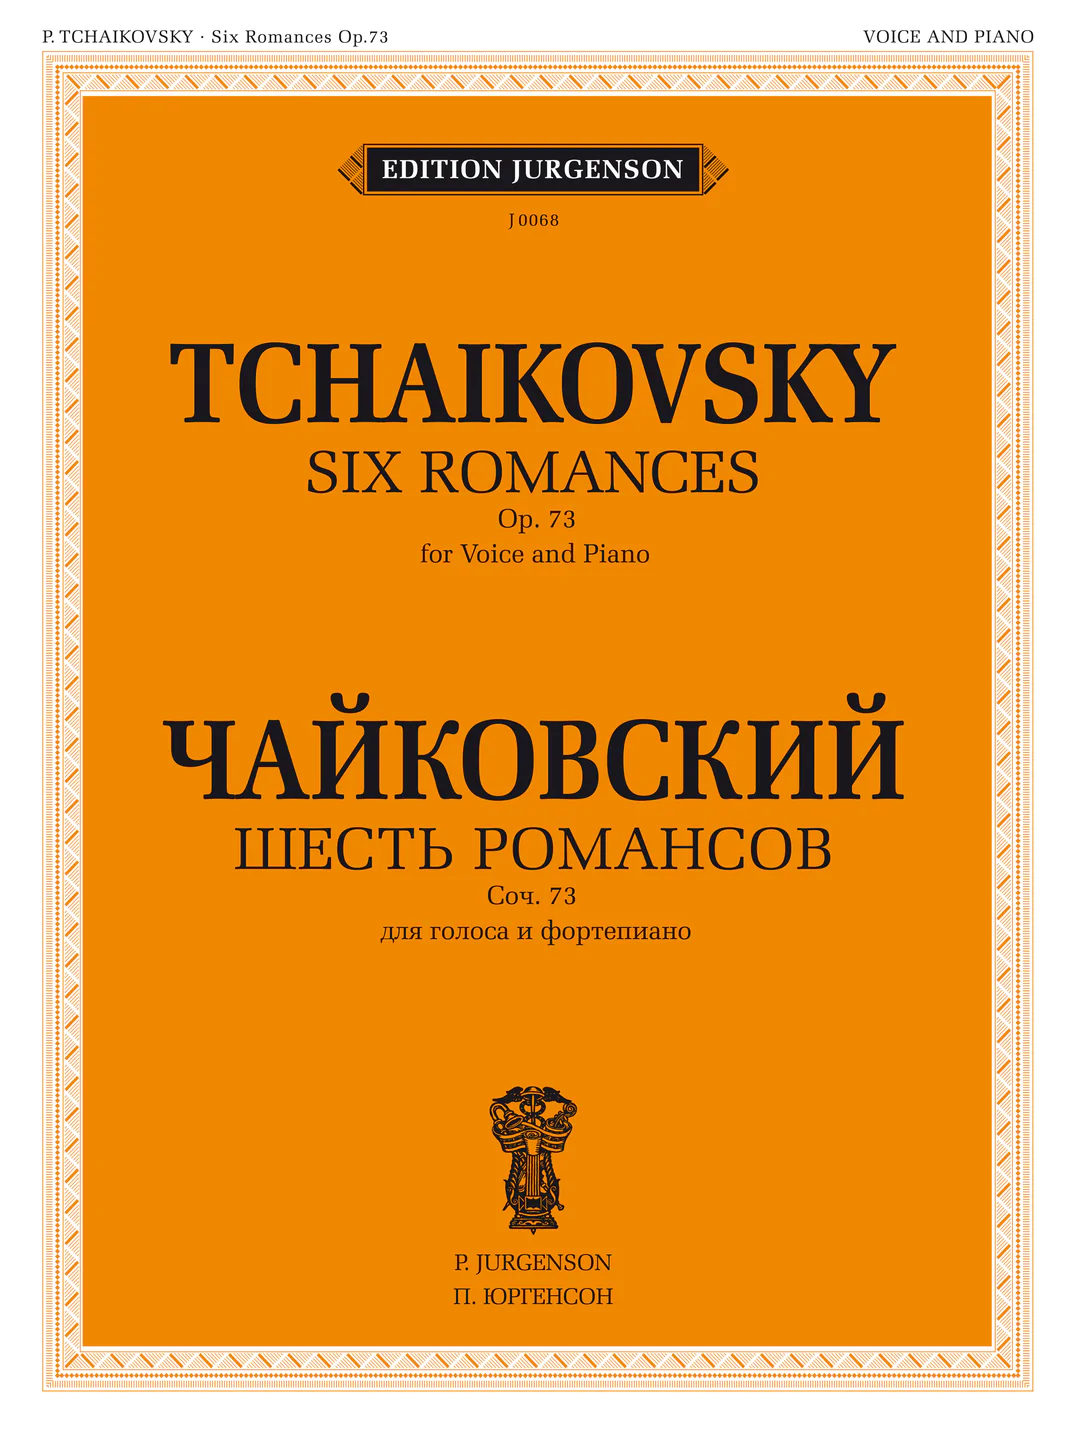 Шесть романсов для голоса и фортепиано сочинение 73 Пособие Чайковский ПИ